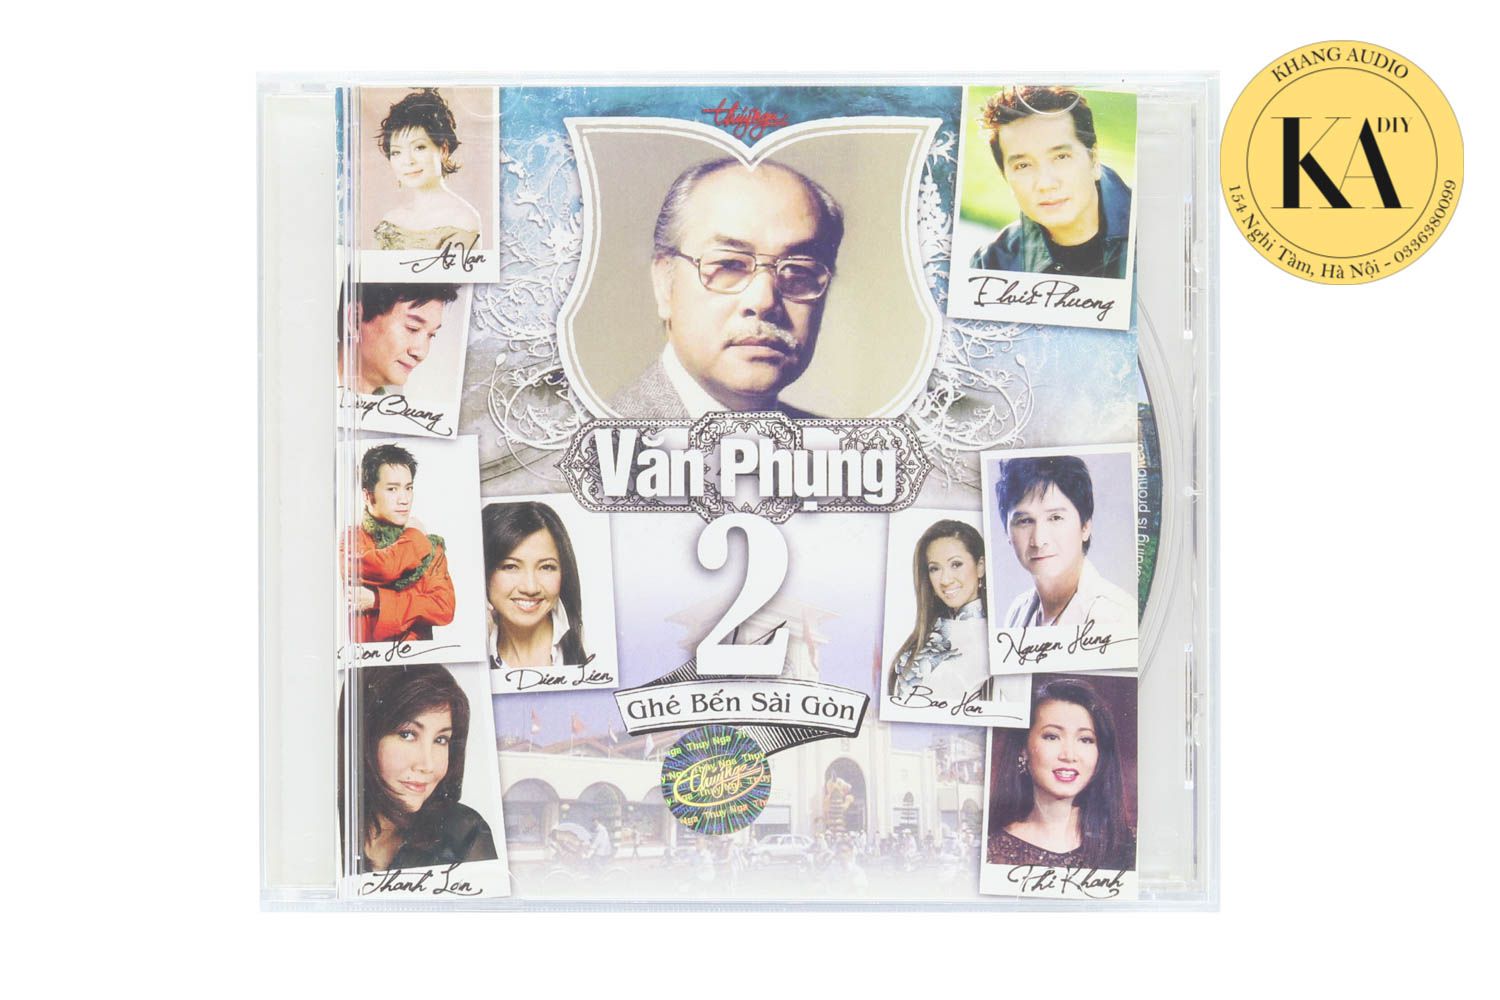 Ghé Bến Sài Gòn - Văn Phụng 2 Khang Audio 0336380099